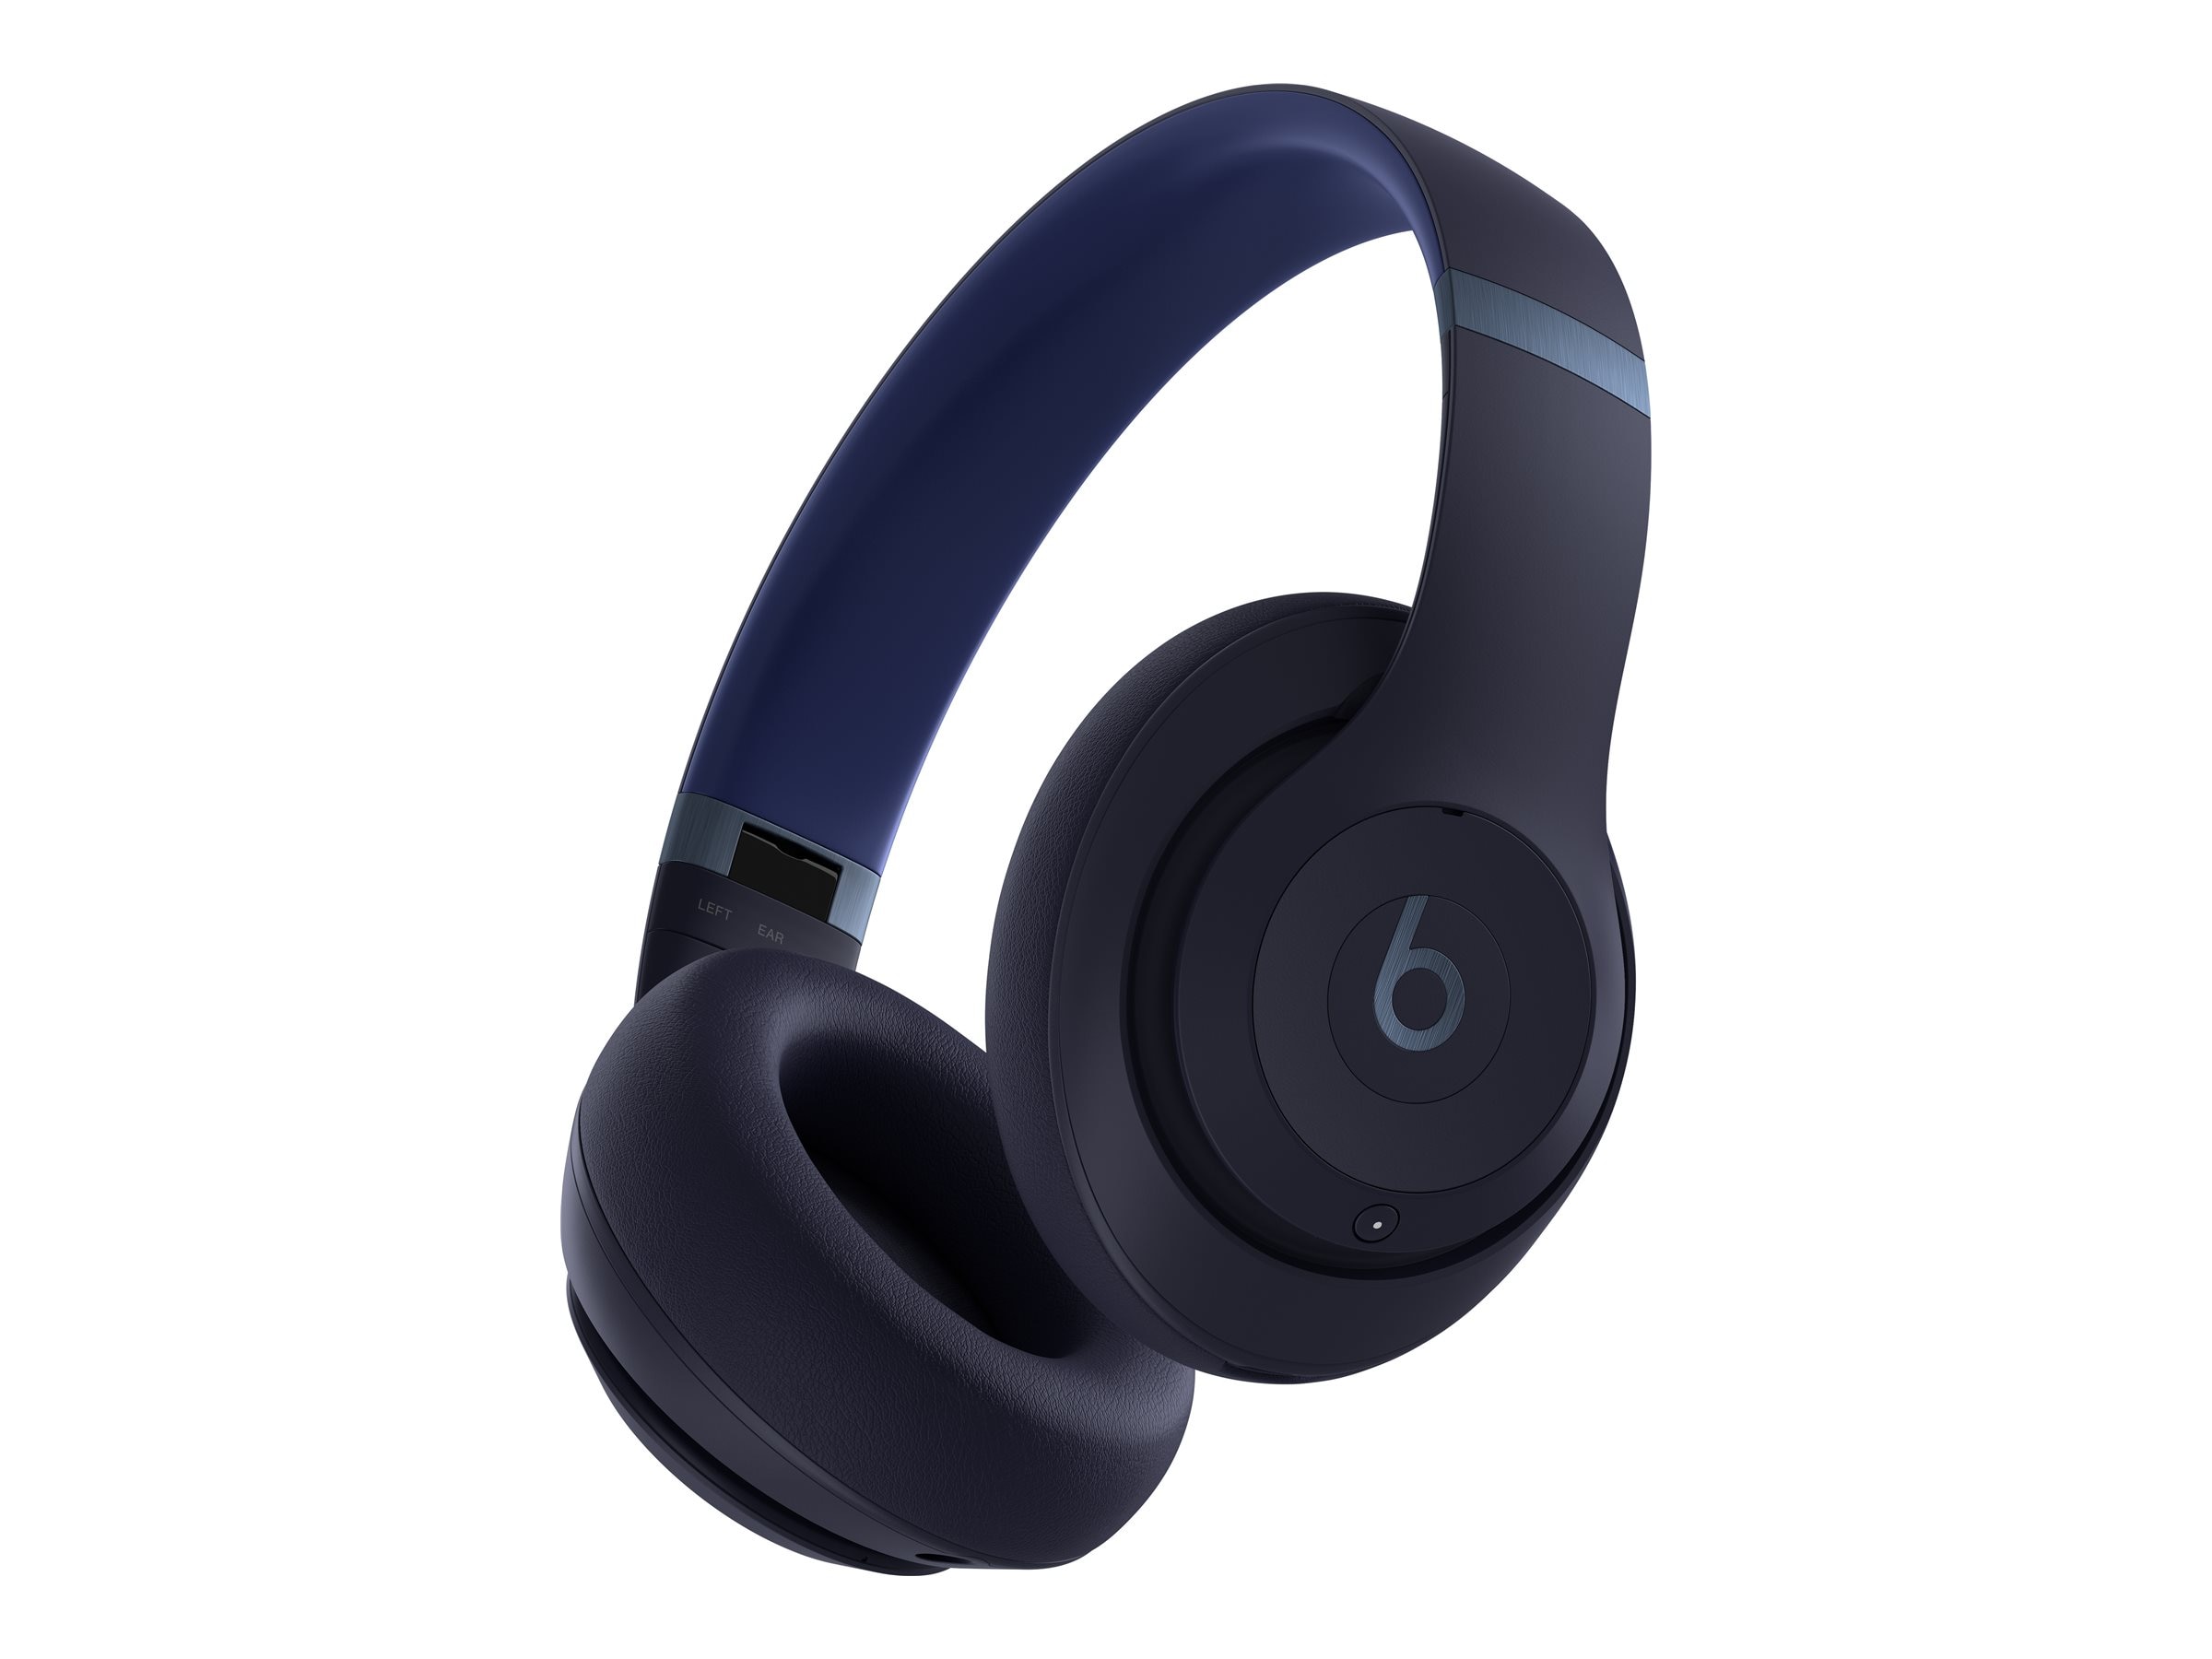 Buy Apple Beats Studio Pro Wireless Headphones - Navy at